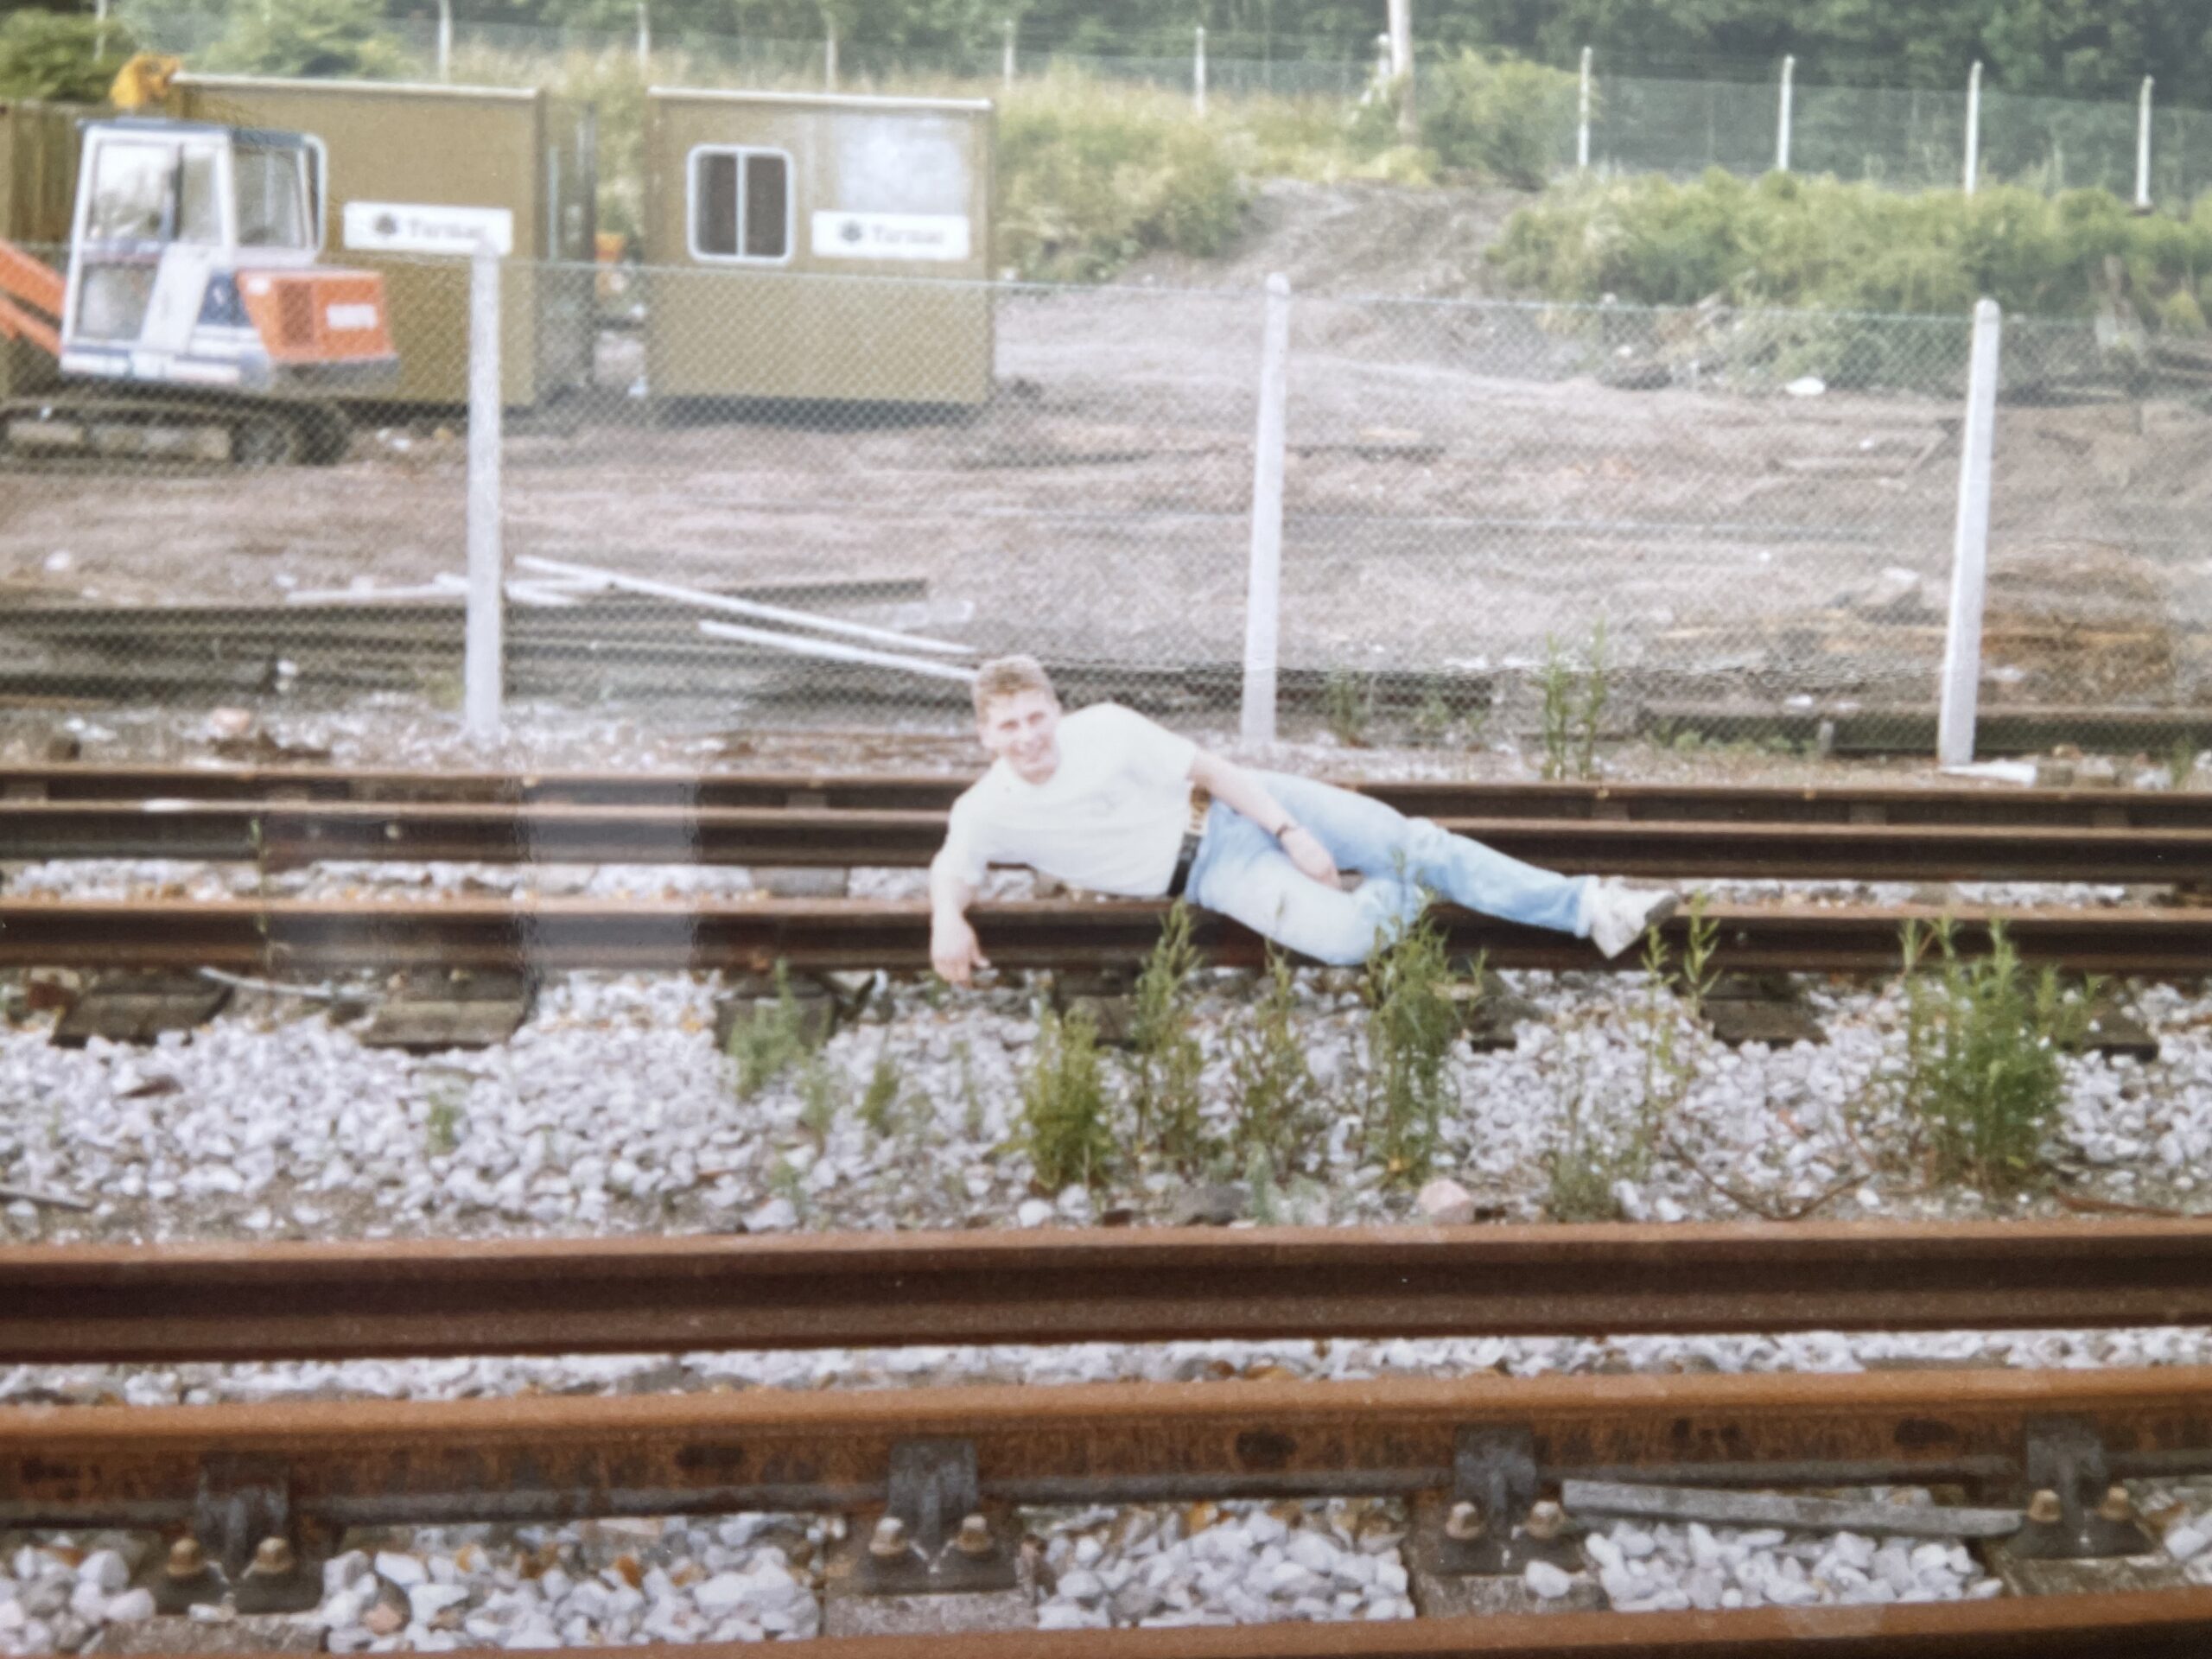 SprogArt relaxing on the railway tracks